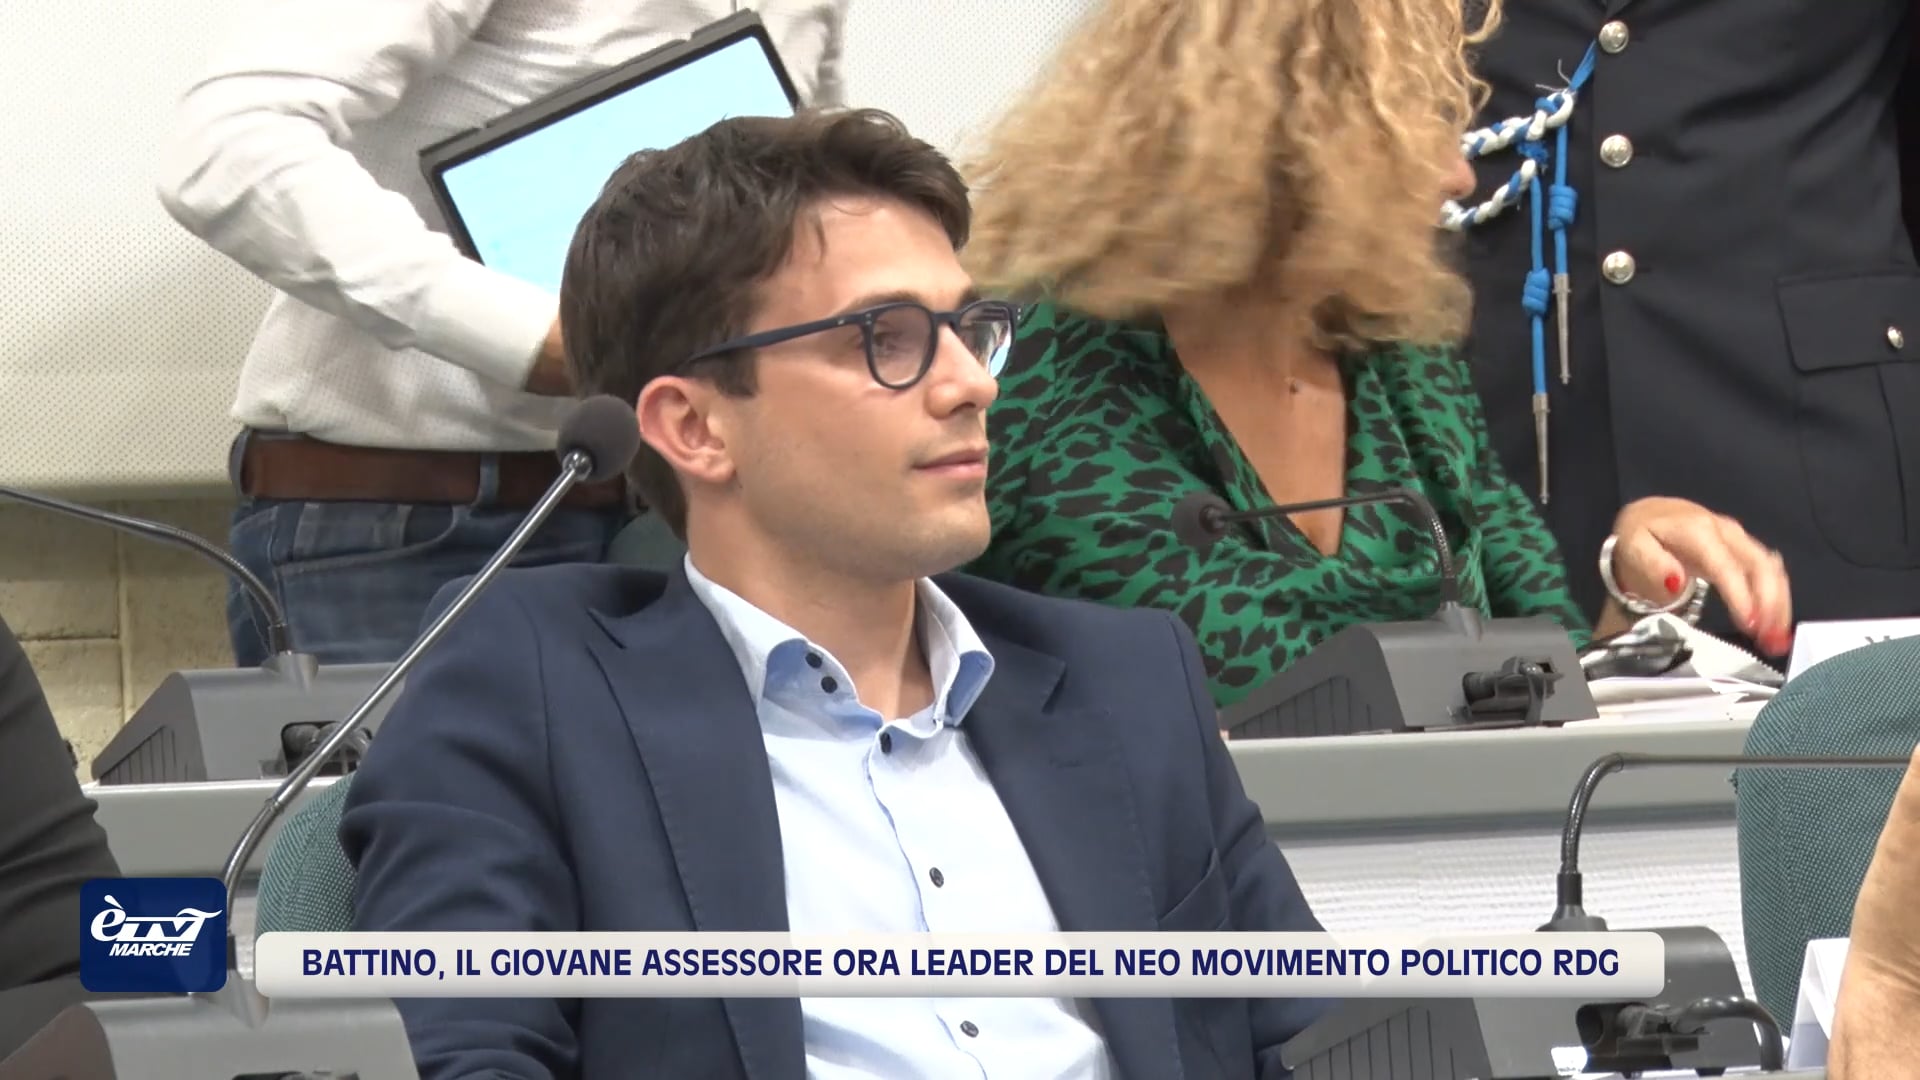 Battino, il giovane assessore ora leader del neo movimento politico Ripartiamo dai Giovani - VIDEO